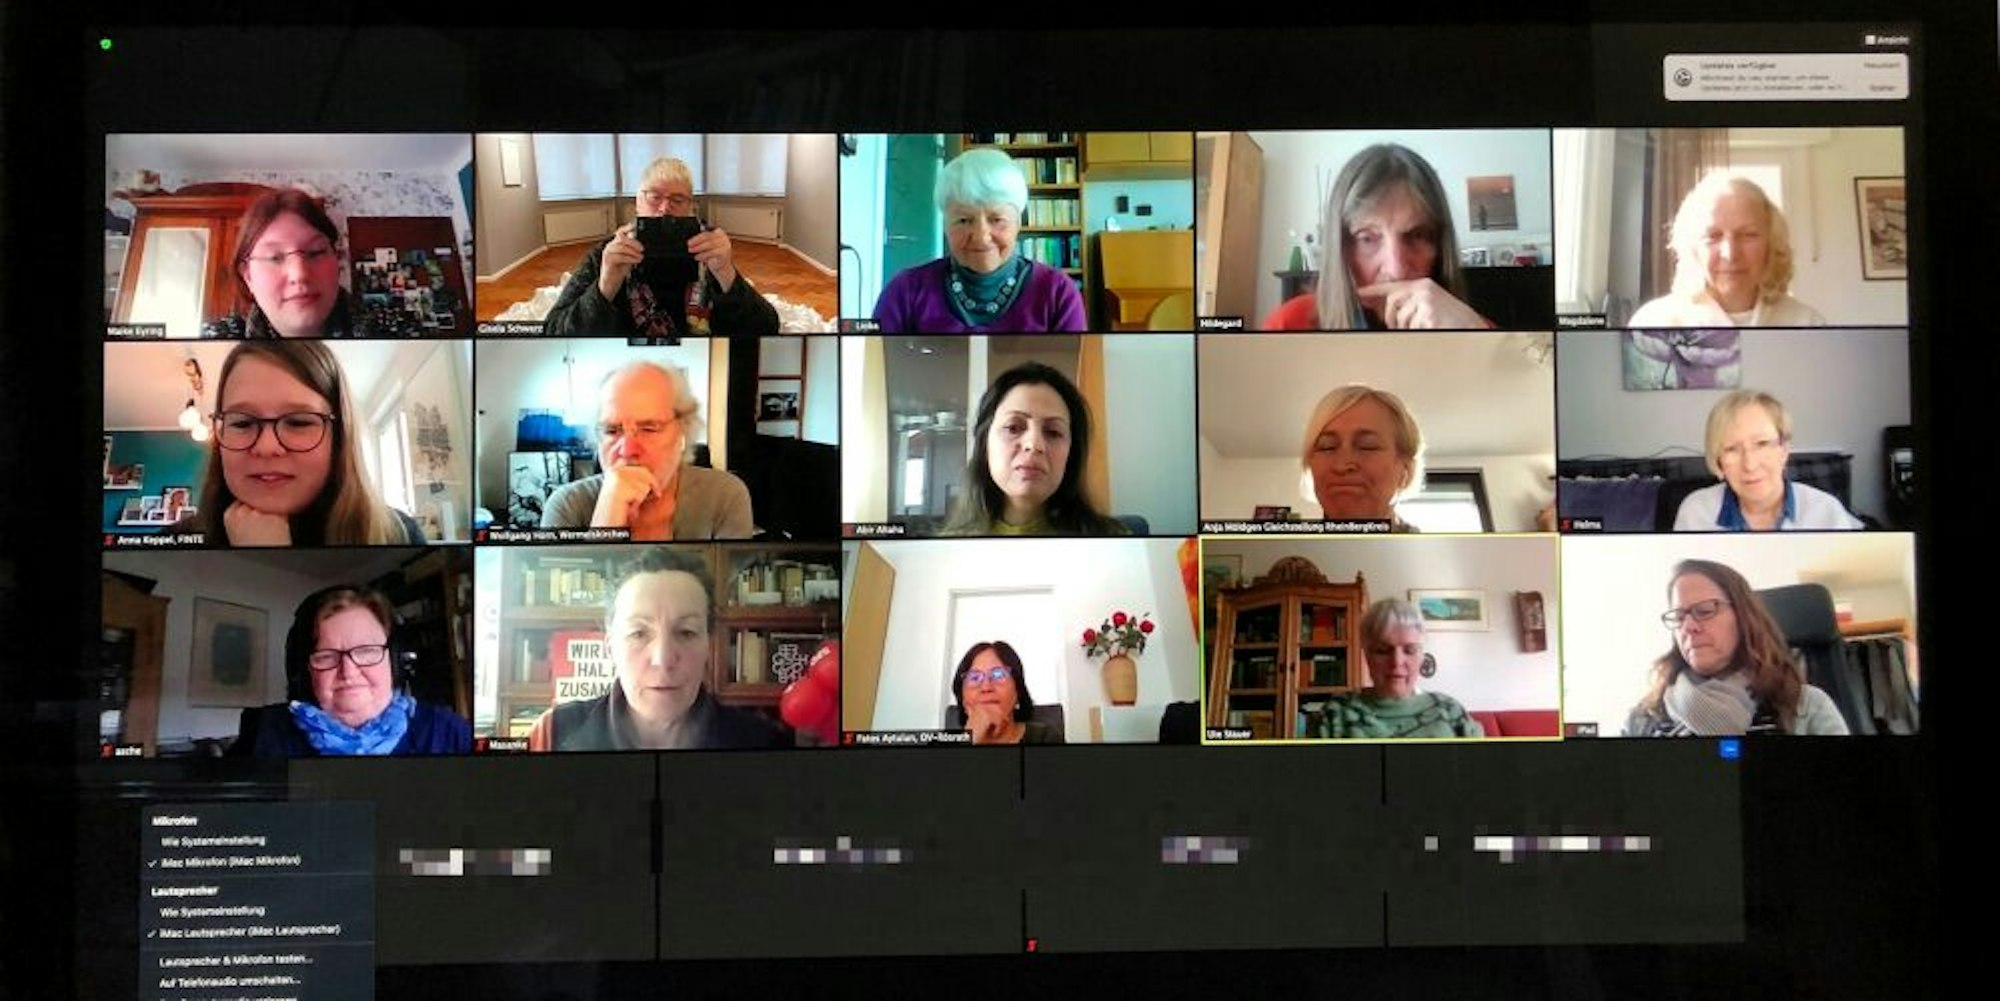 Auch der Frauentag wurde virtuell begangen – mit einem Videomeeting via Zoom, an dem 19 Personen teilnahmen.